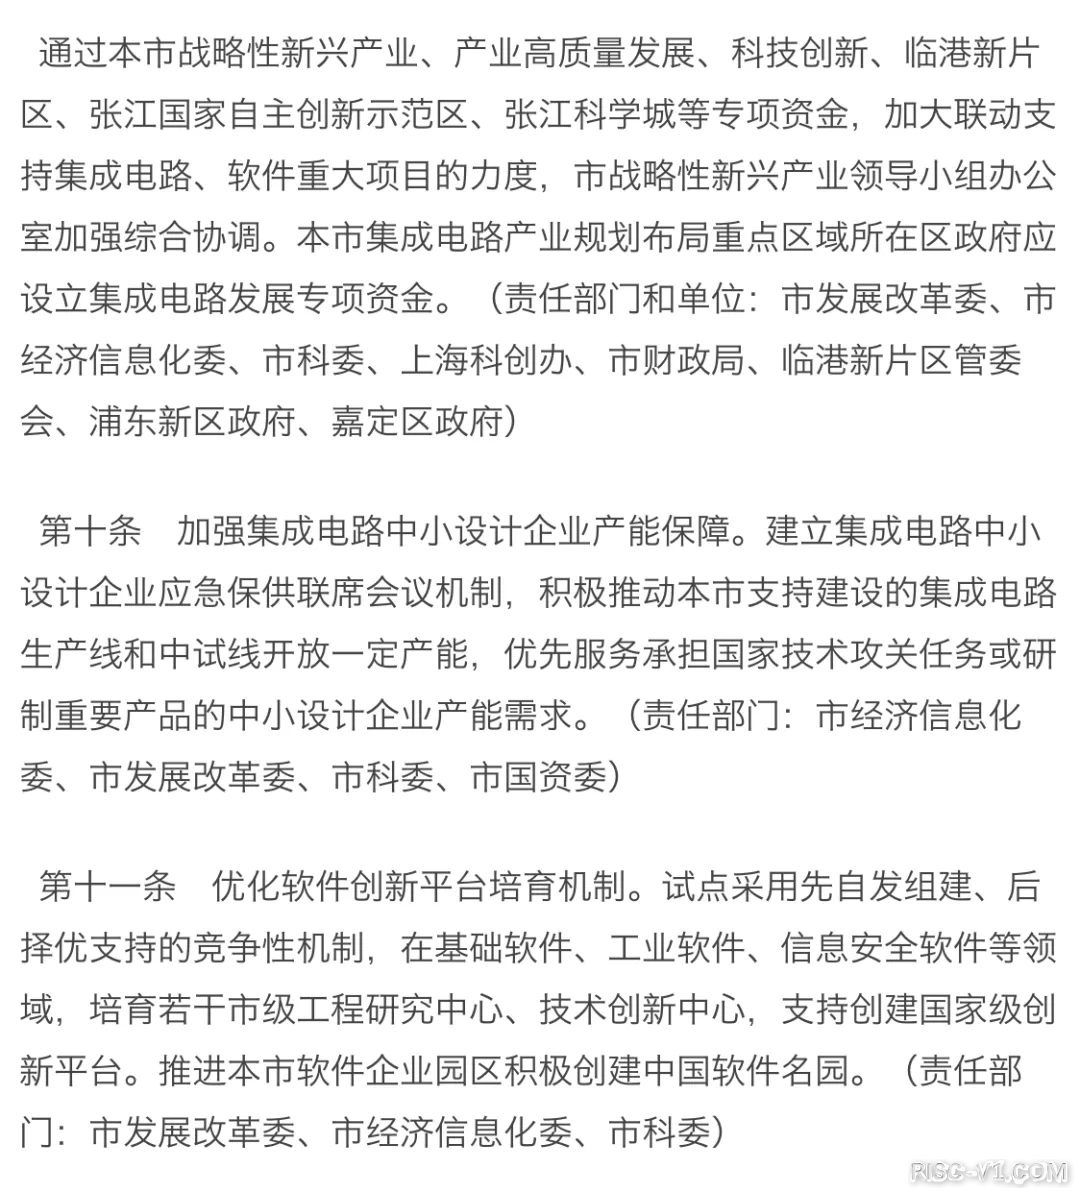 国内芯片技术交流-上海发布芯片新政，流片最高补贴1亿元risc-v单片机中文社区(8)